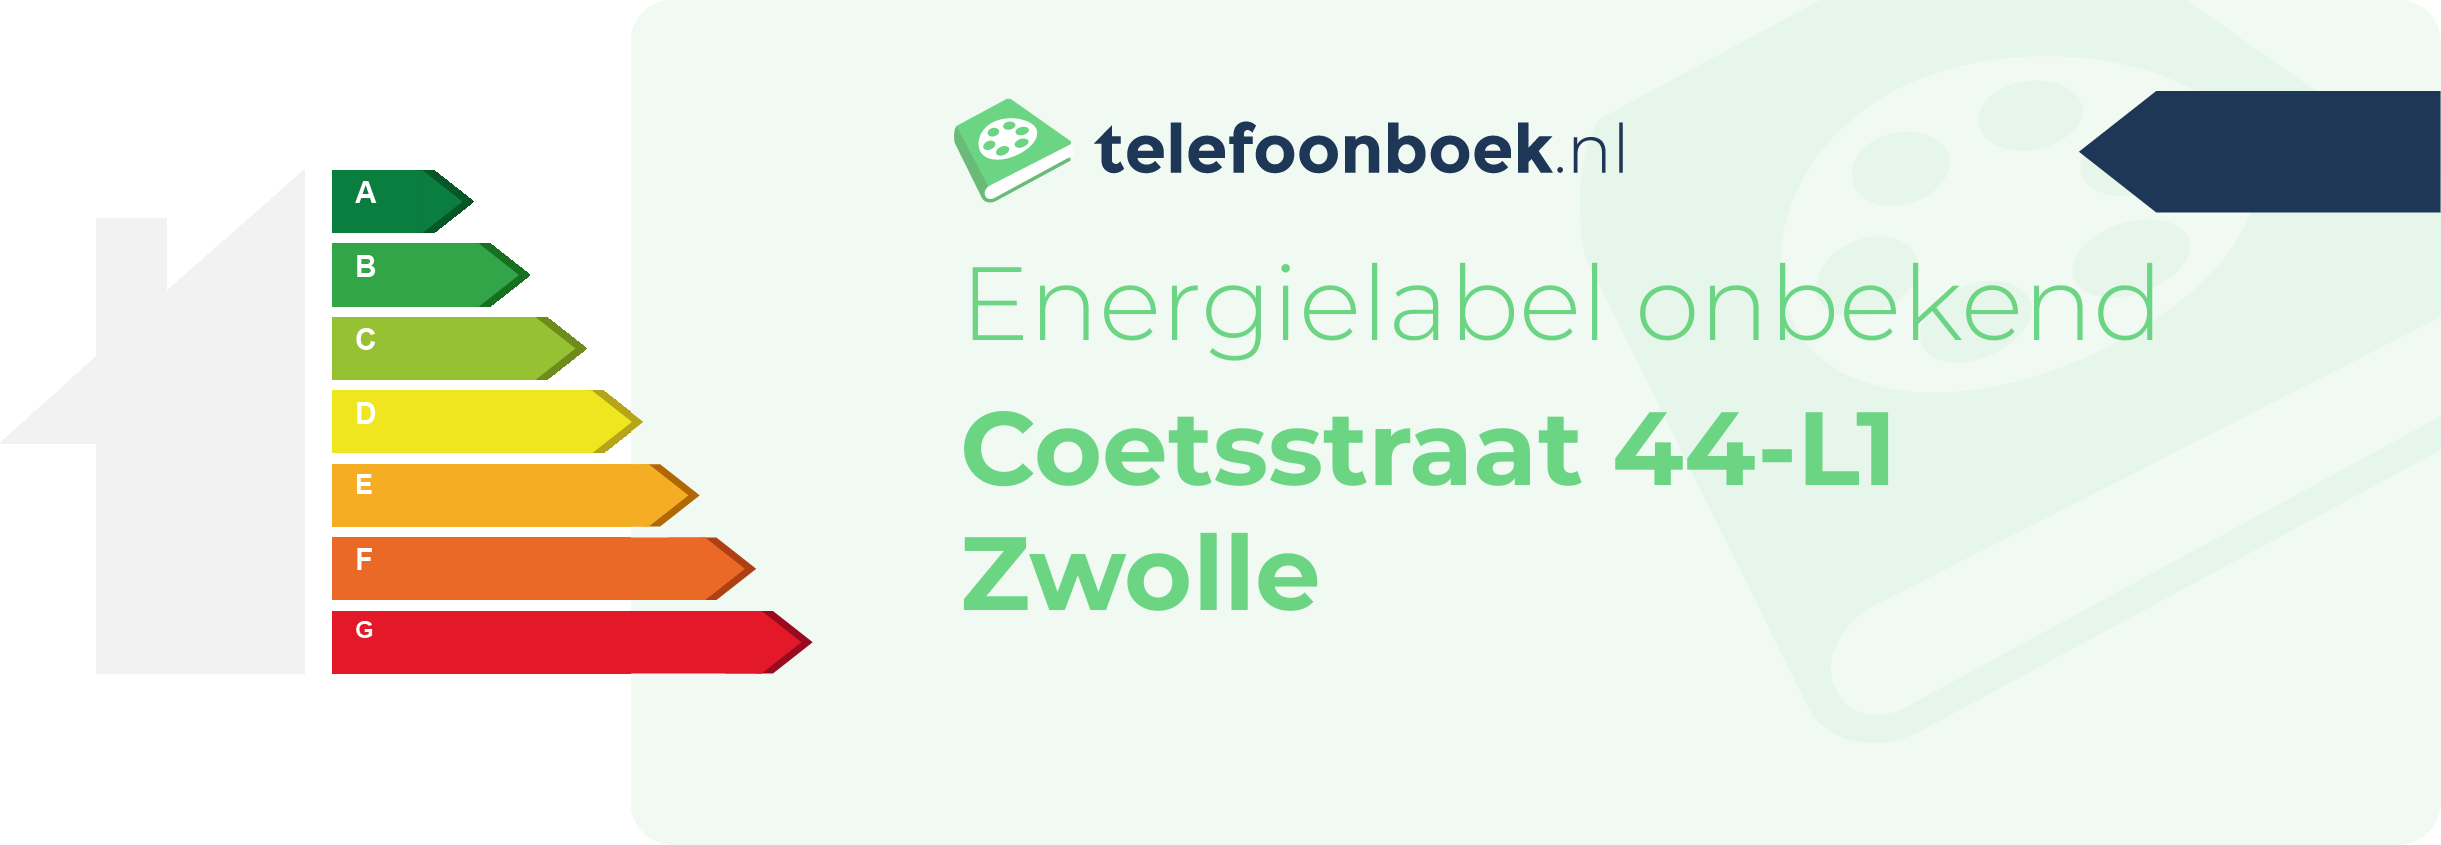 Energielabel Coetsstraat 44-L1 Zwolle